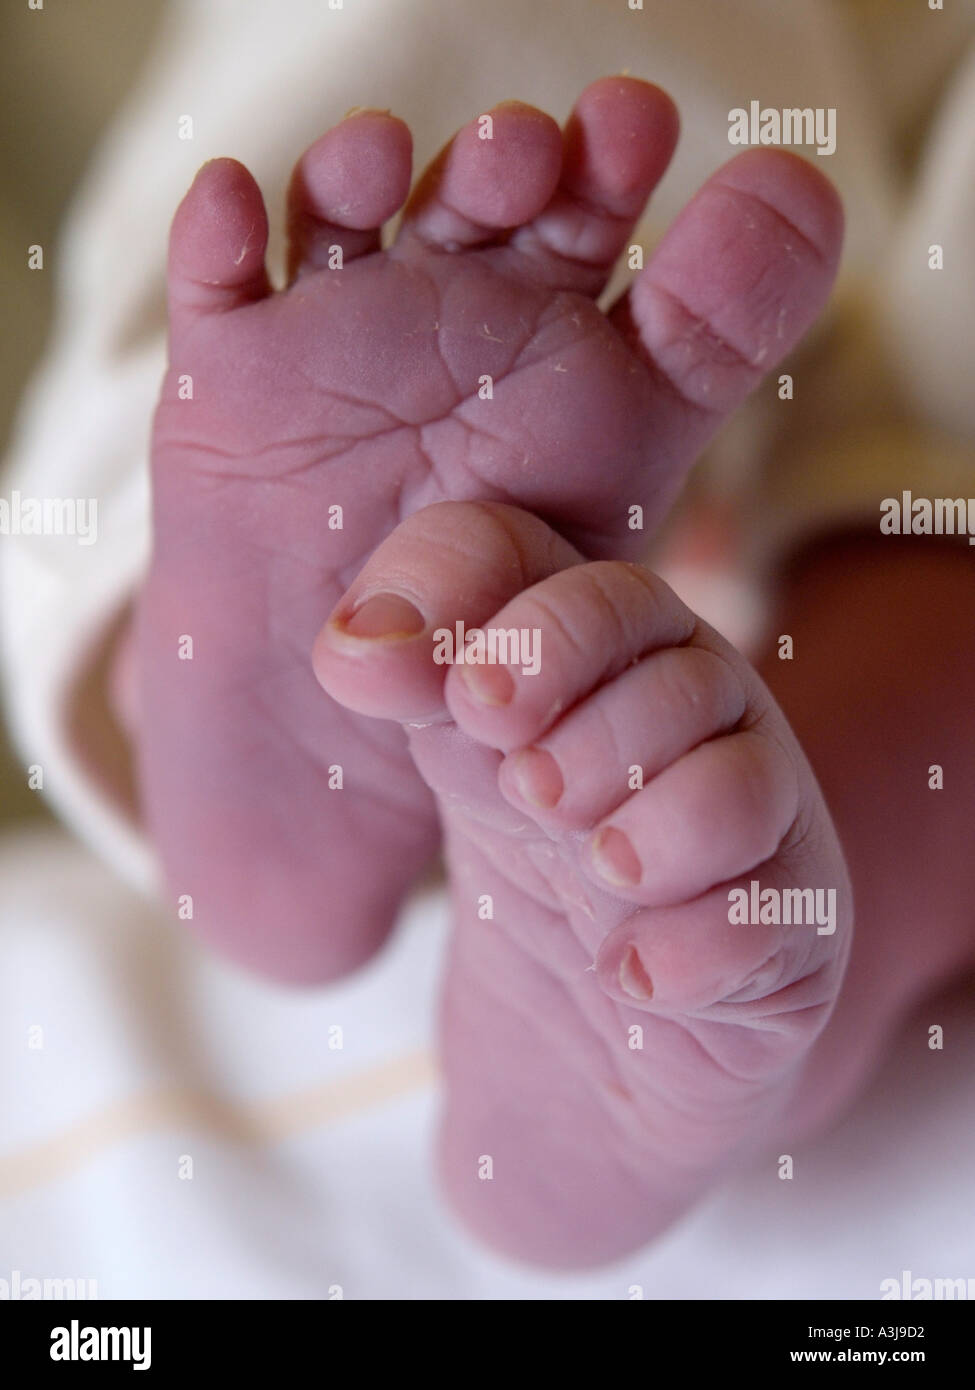 Po stropicciato piedi del bambino di un neonato fotografato circa quindici minuti dopo la nascita Foto Stock